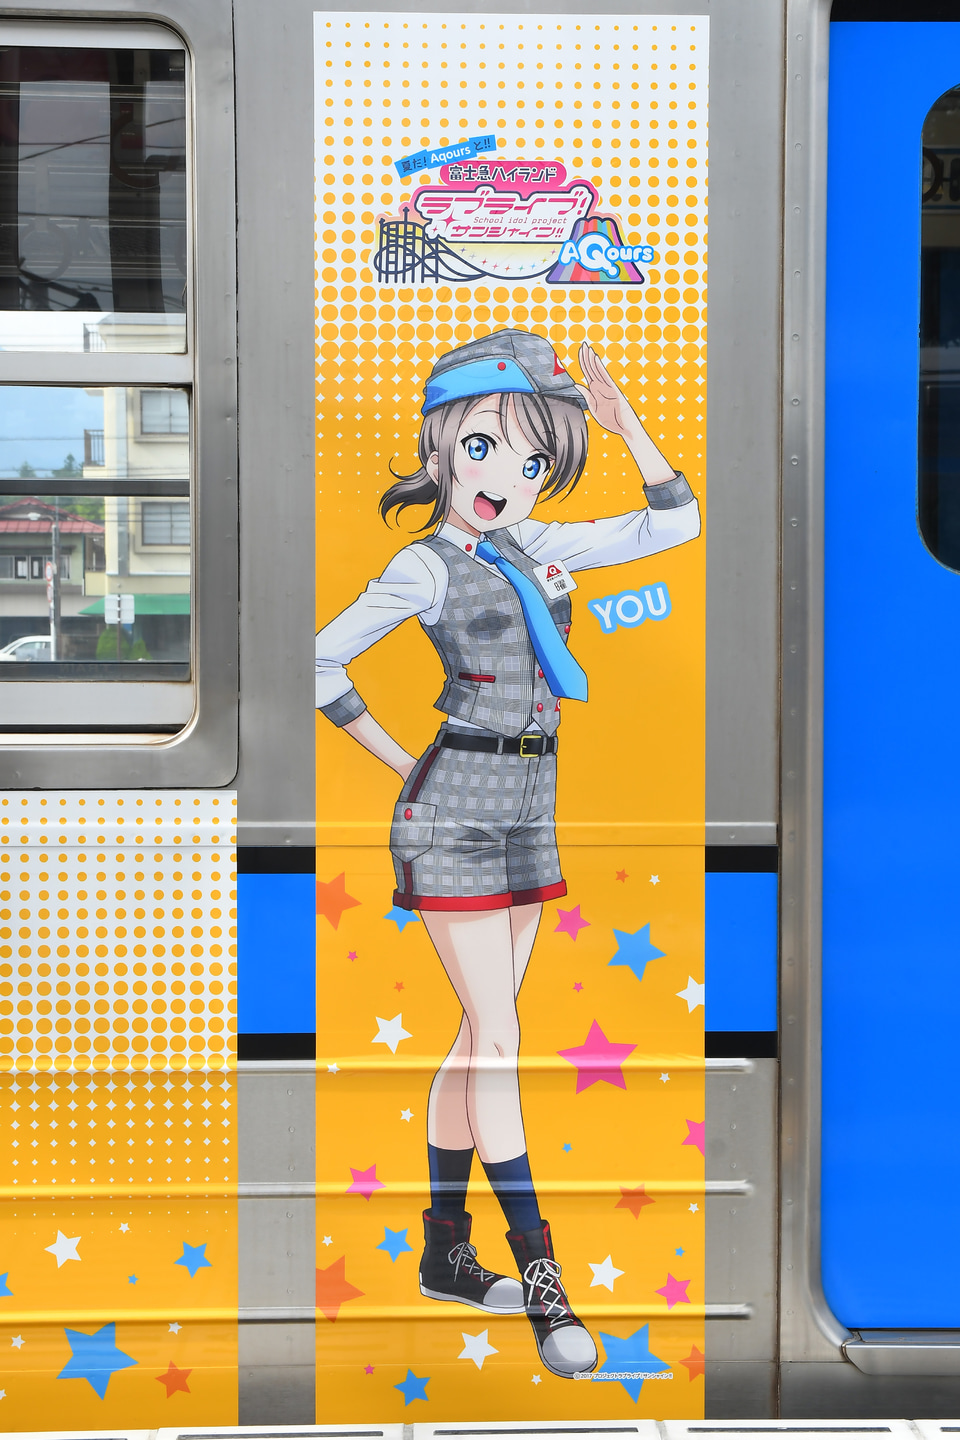 【富士急】6000系6002F「ラブライブ!サンシャイン!!」ラッピング列車の拡大写真